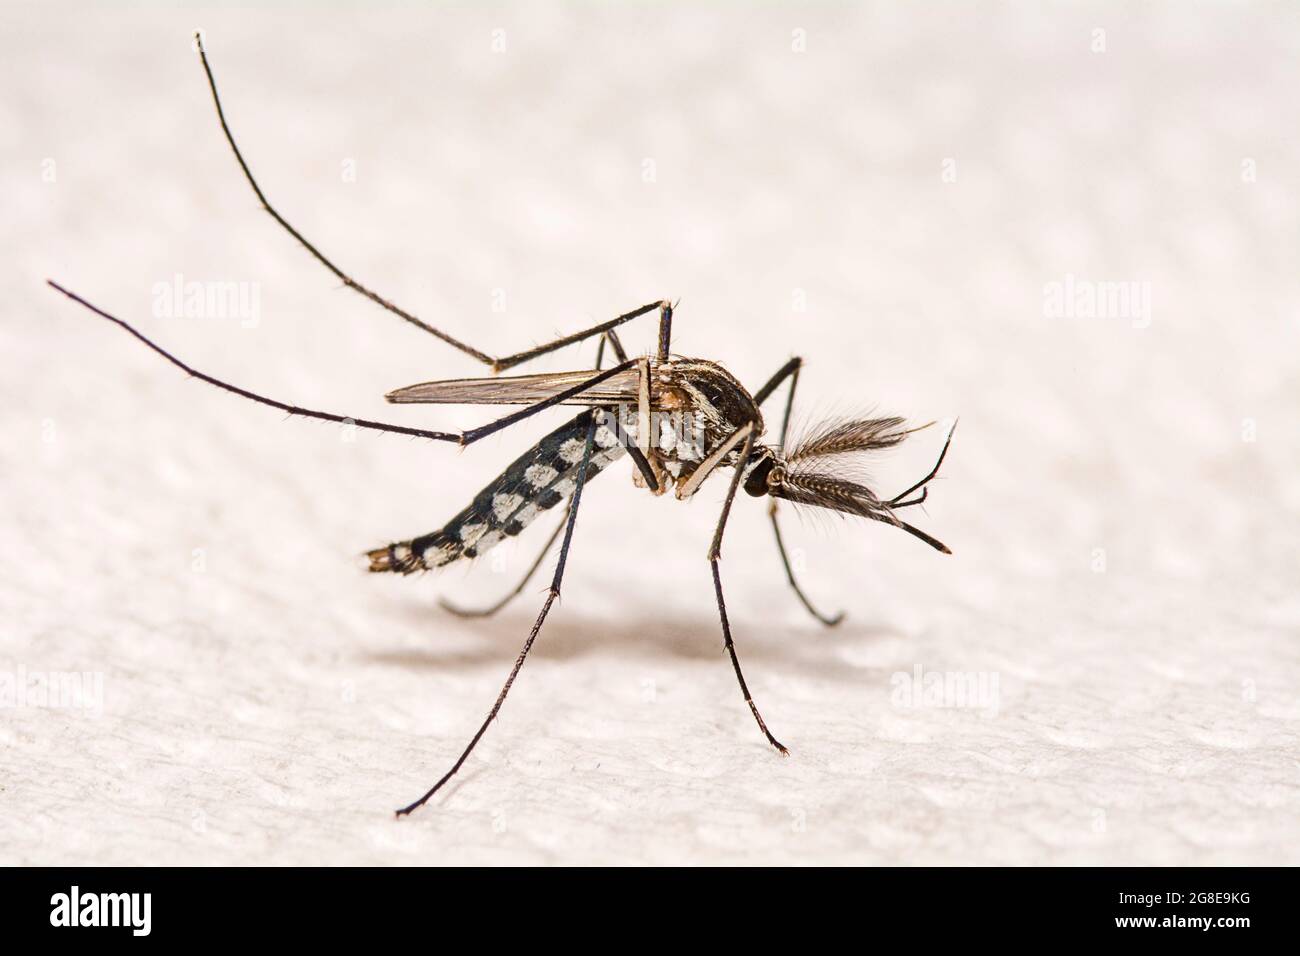 Nahaufnahme Aedes aegypti oder Hausmücke. Stockfoto